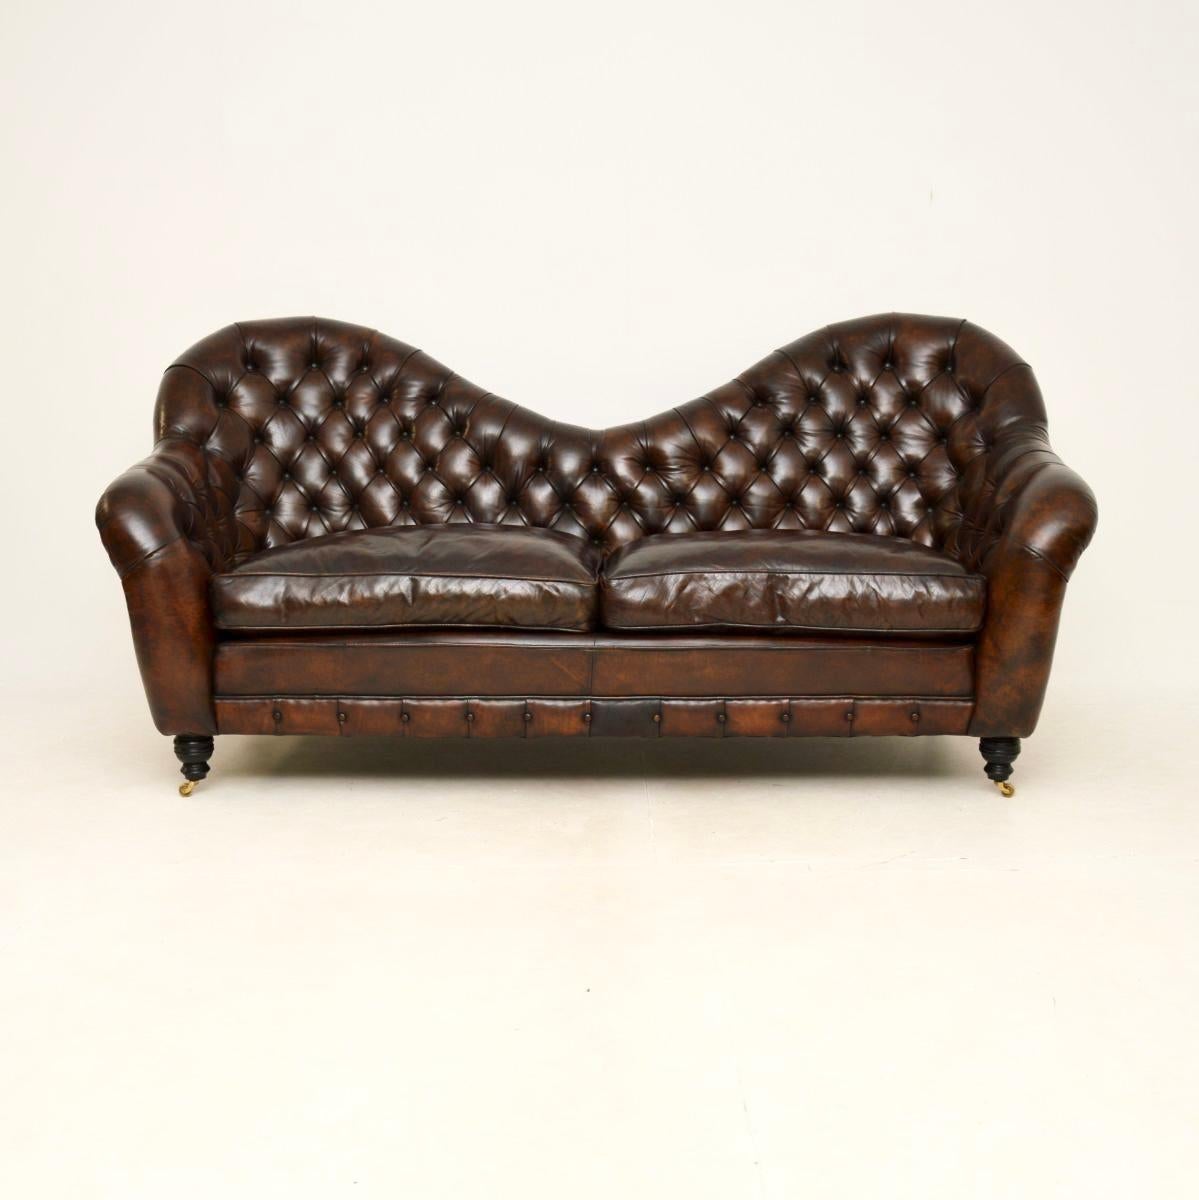 Un superbe canapé ancien en cuir de style Chesterfield, extrêmement bien fait. Fabriqué en Angleterre, il date de la fin du 20e siècle.

Il s'agit d'un produit de très grande qualité, aux proportions très généreuses. Il a un design magnifique et